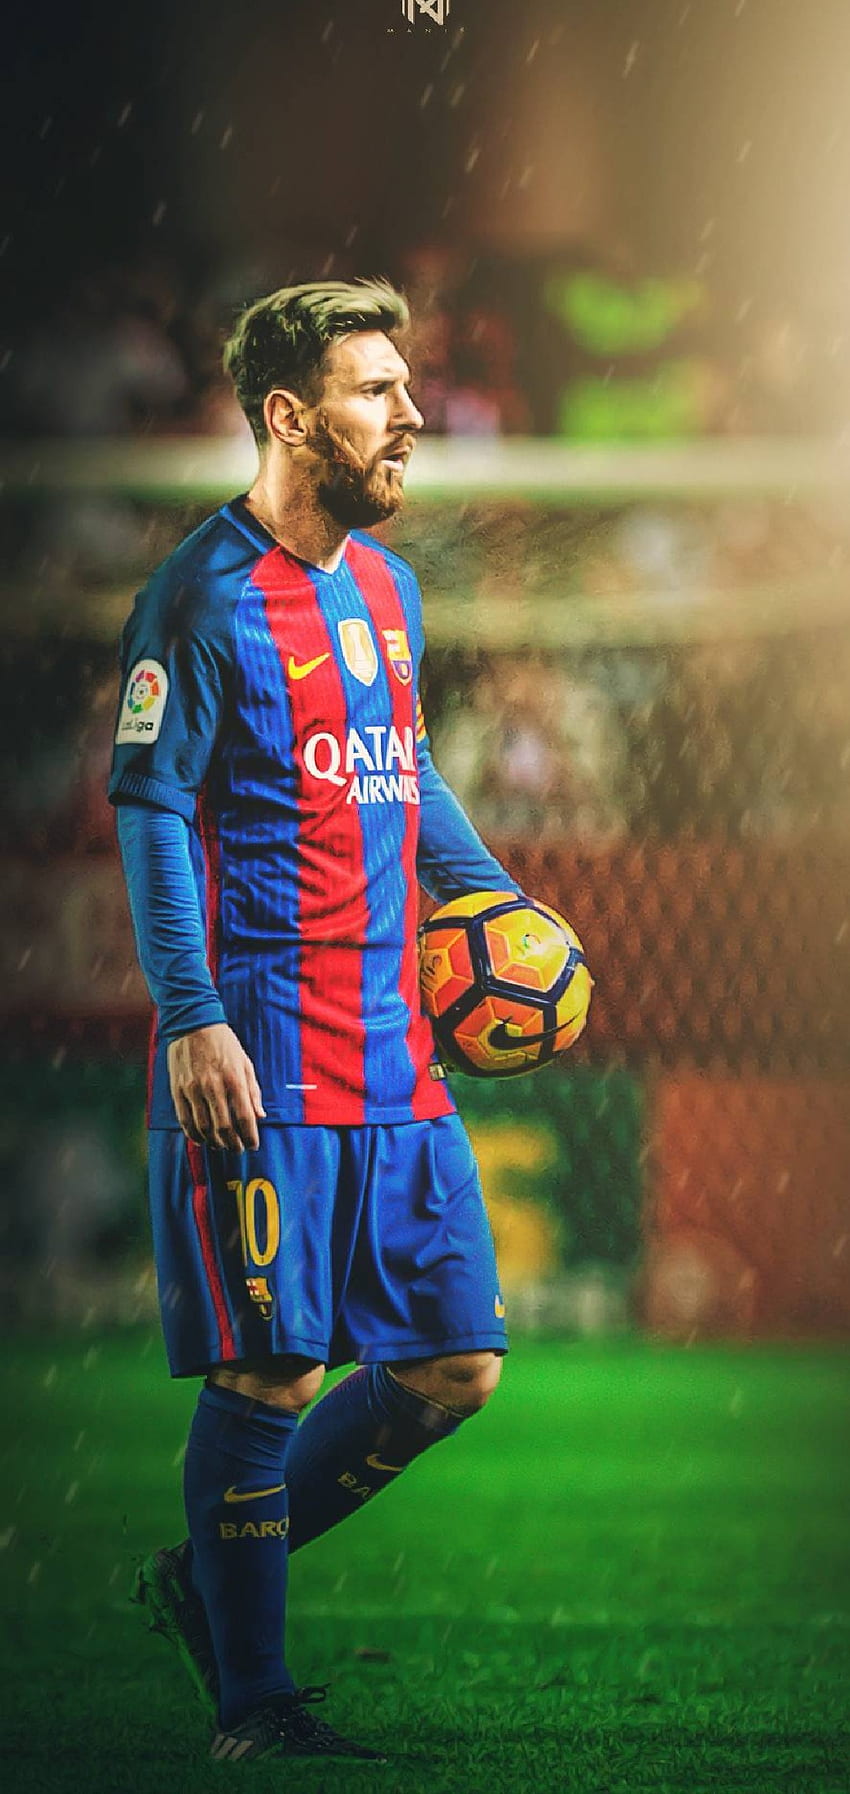 Xem hình nền điện thoại HD của Lionel Messi sẽ mang lại cho bạn niềm vui và niềm tự hào khi xem ảnh của cầu thủ bóng đá xuất sắc này trên màn hình điện thoại của mình. Các hình nền này sẽ giúp bạn cảm thấy sự ấn tượng của bạn đối với tài năng của Messi trên sân cỏ.